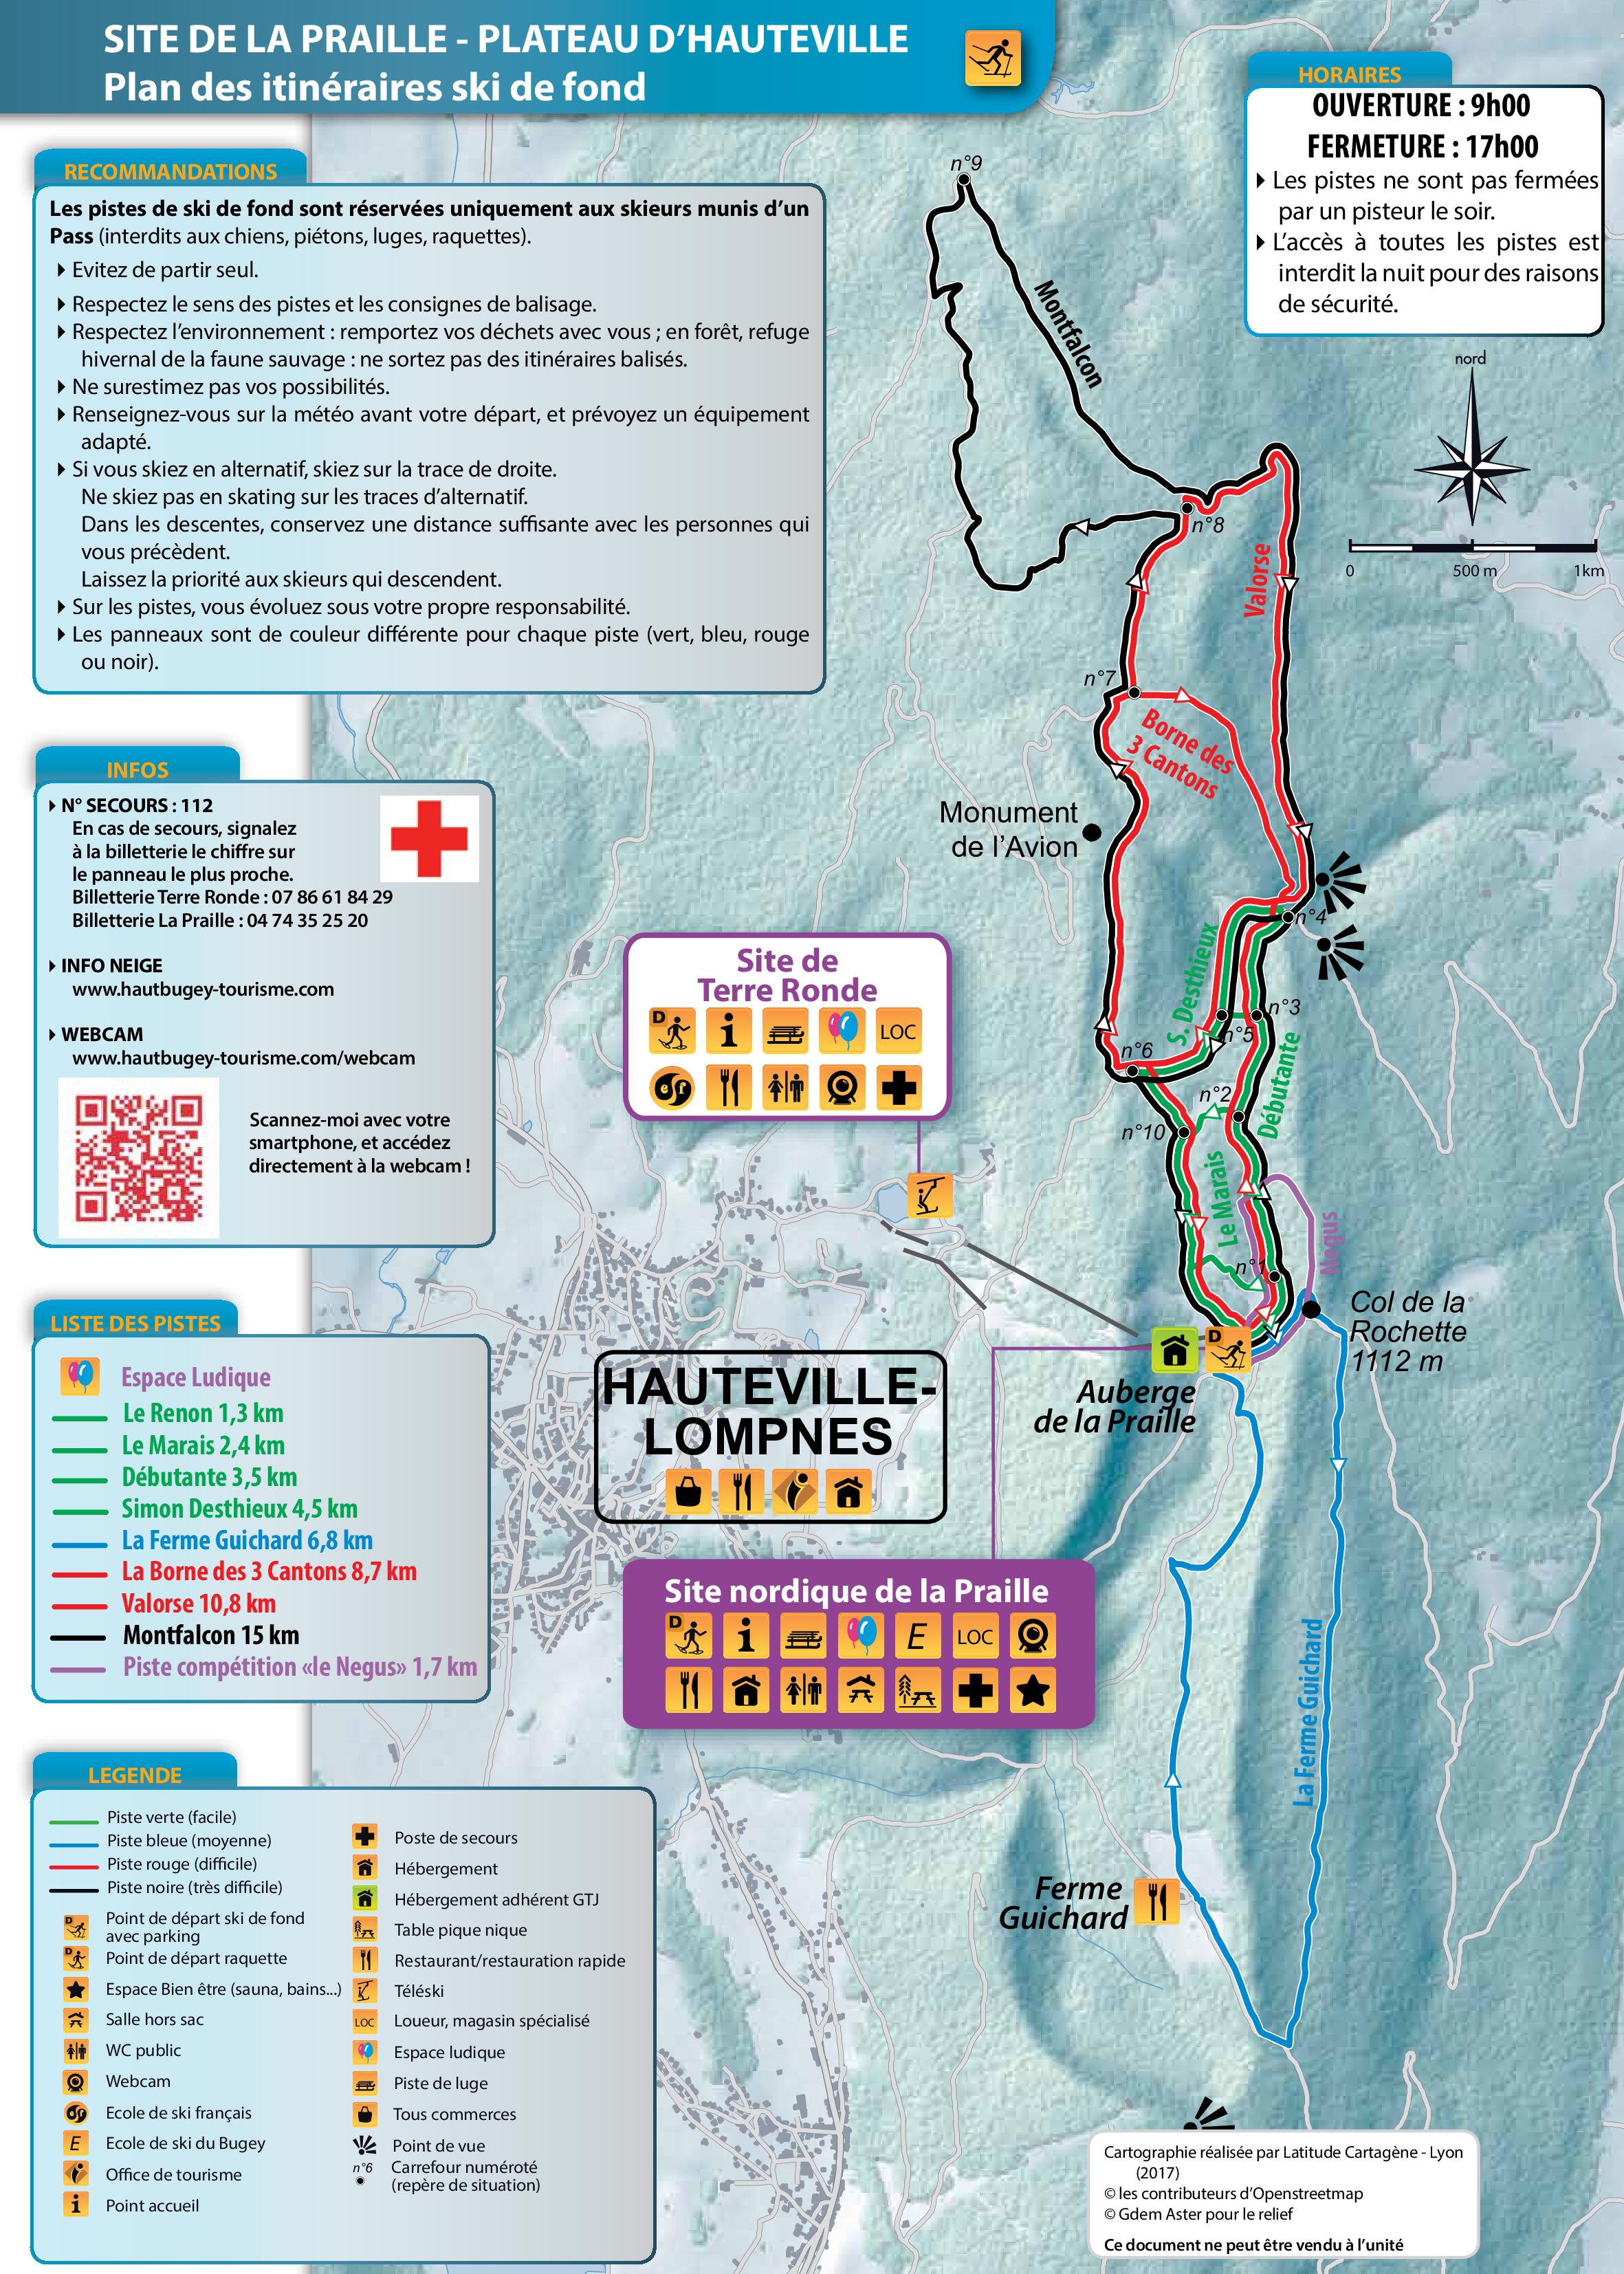 Plan des pistes ski de fond Plateau d'Hauteville 